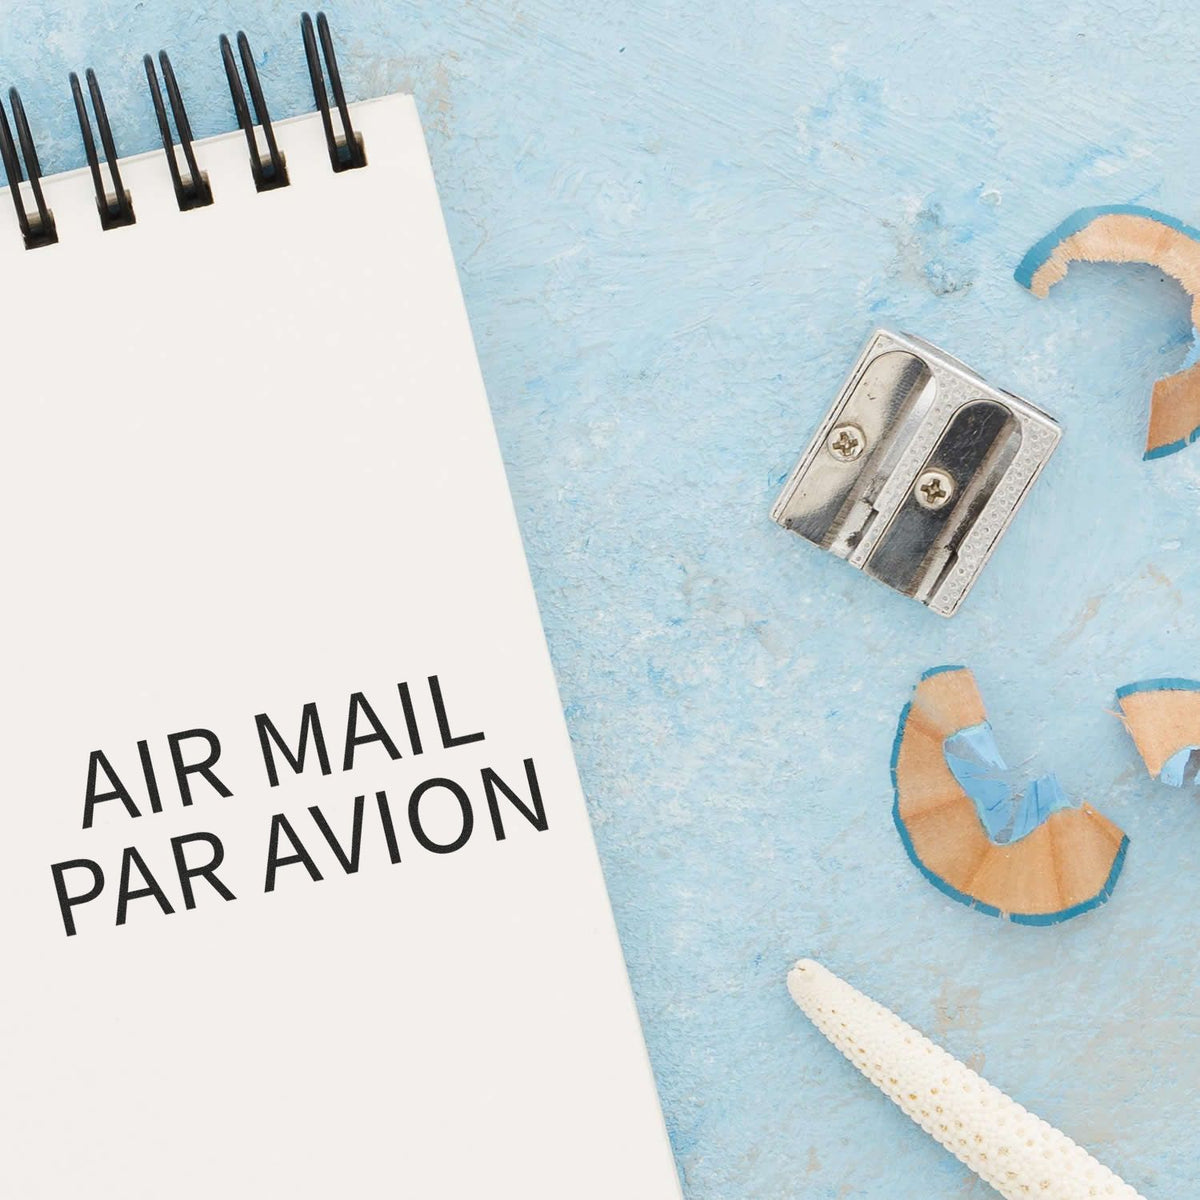 Large Air Mail Par Avion Rubber Stamp Lifestyle Photo